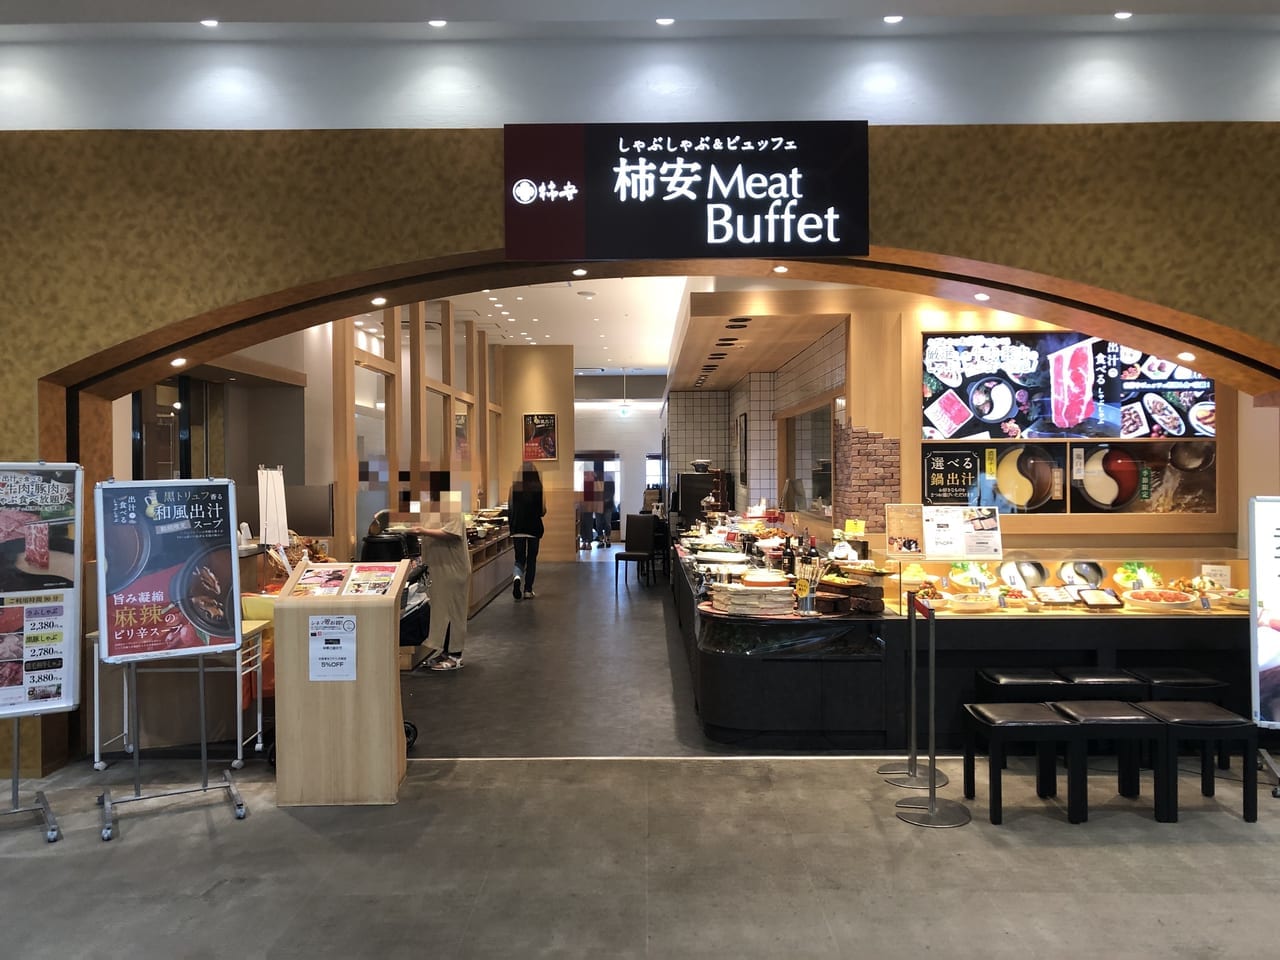 柿安 Meat Buffet